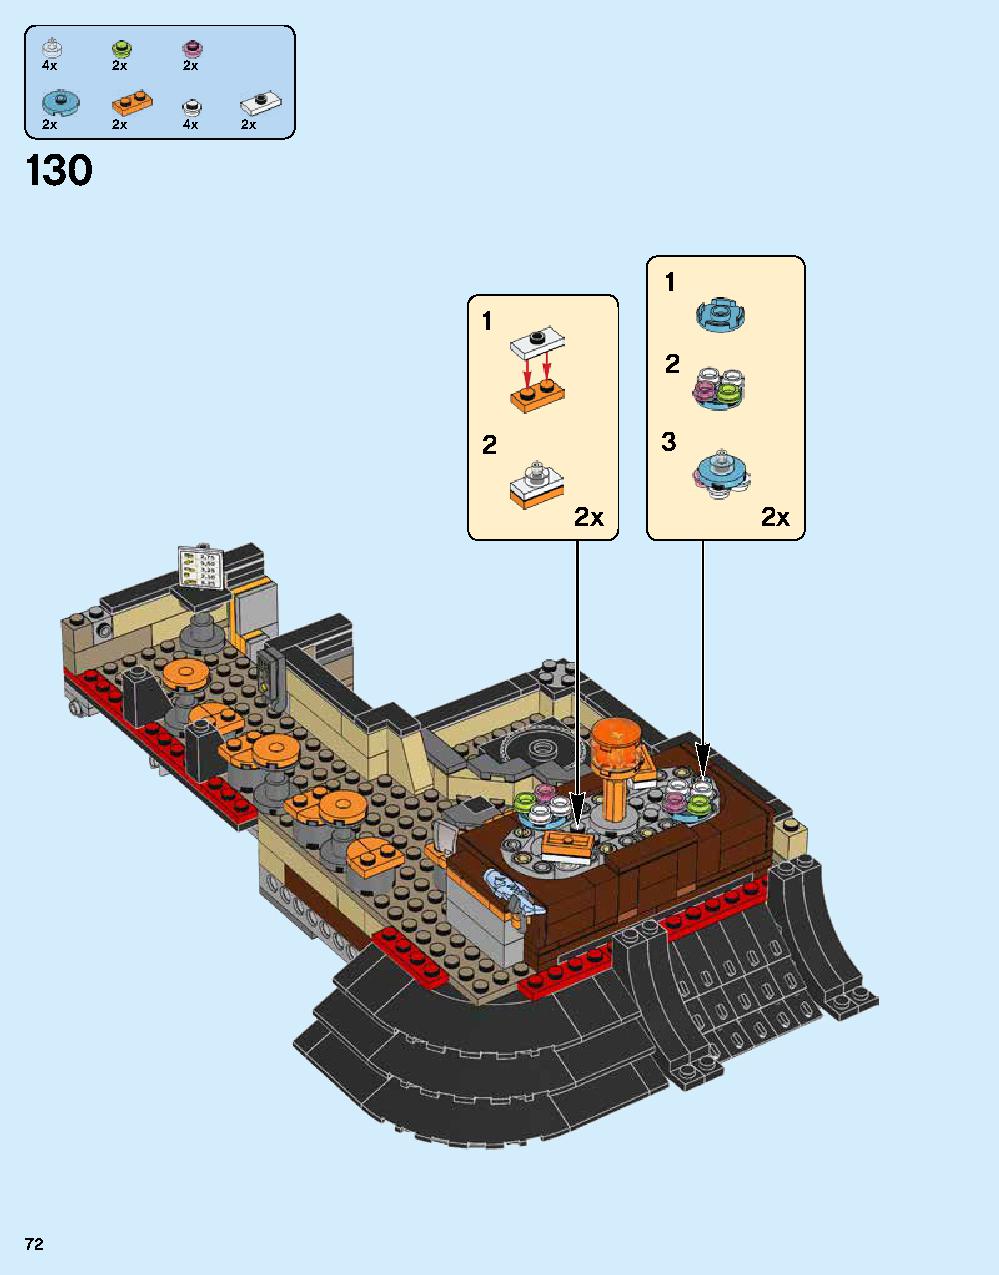 ニンジャゴー シティ 70620 レゴの商品情報 レゴの説明書・組立方法 72 page